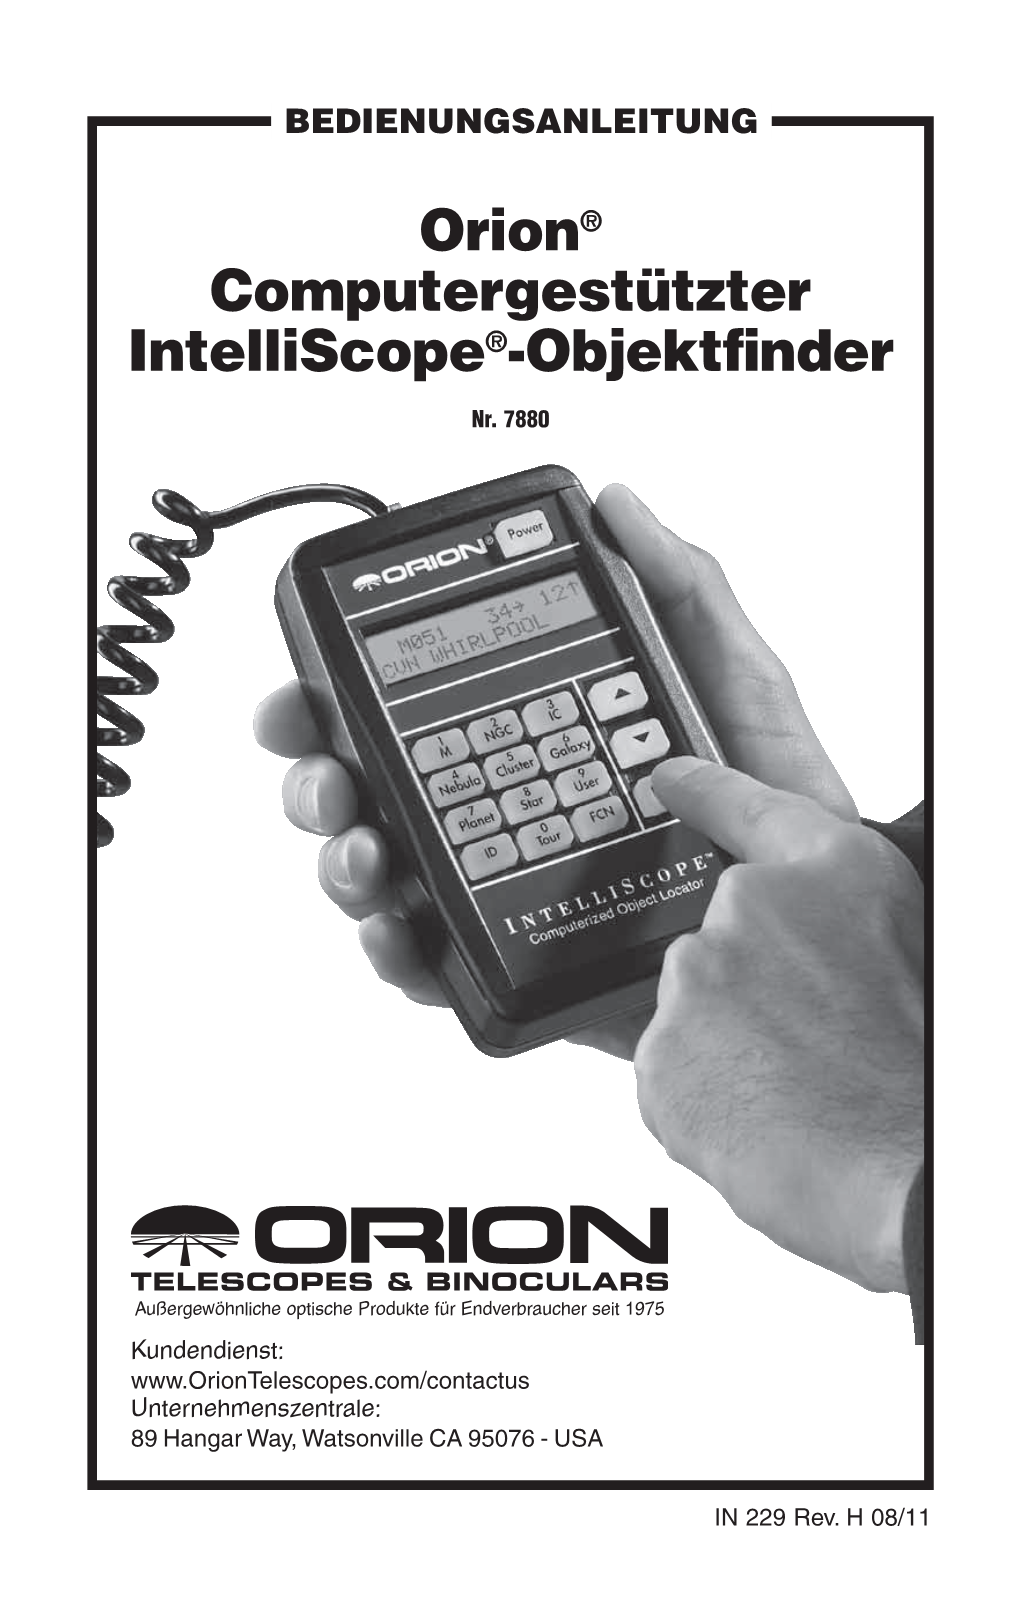 Orion® Computergestützter Intelliscope®-Objektfinder